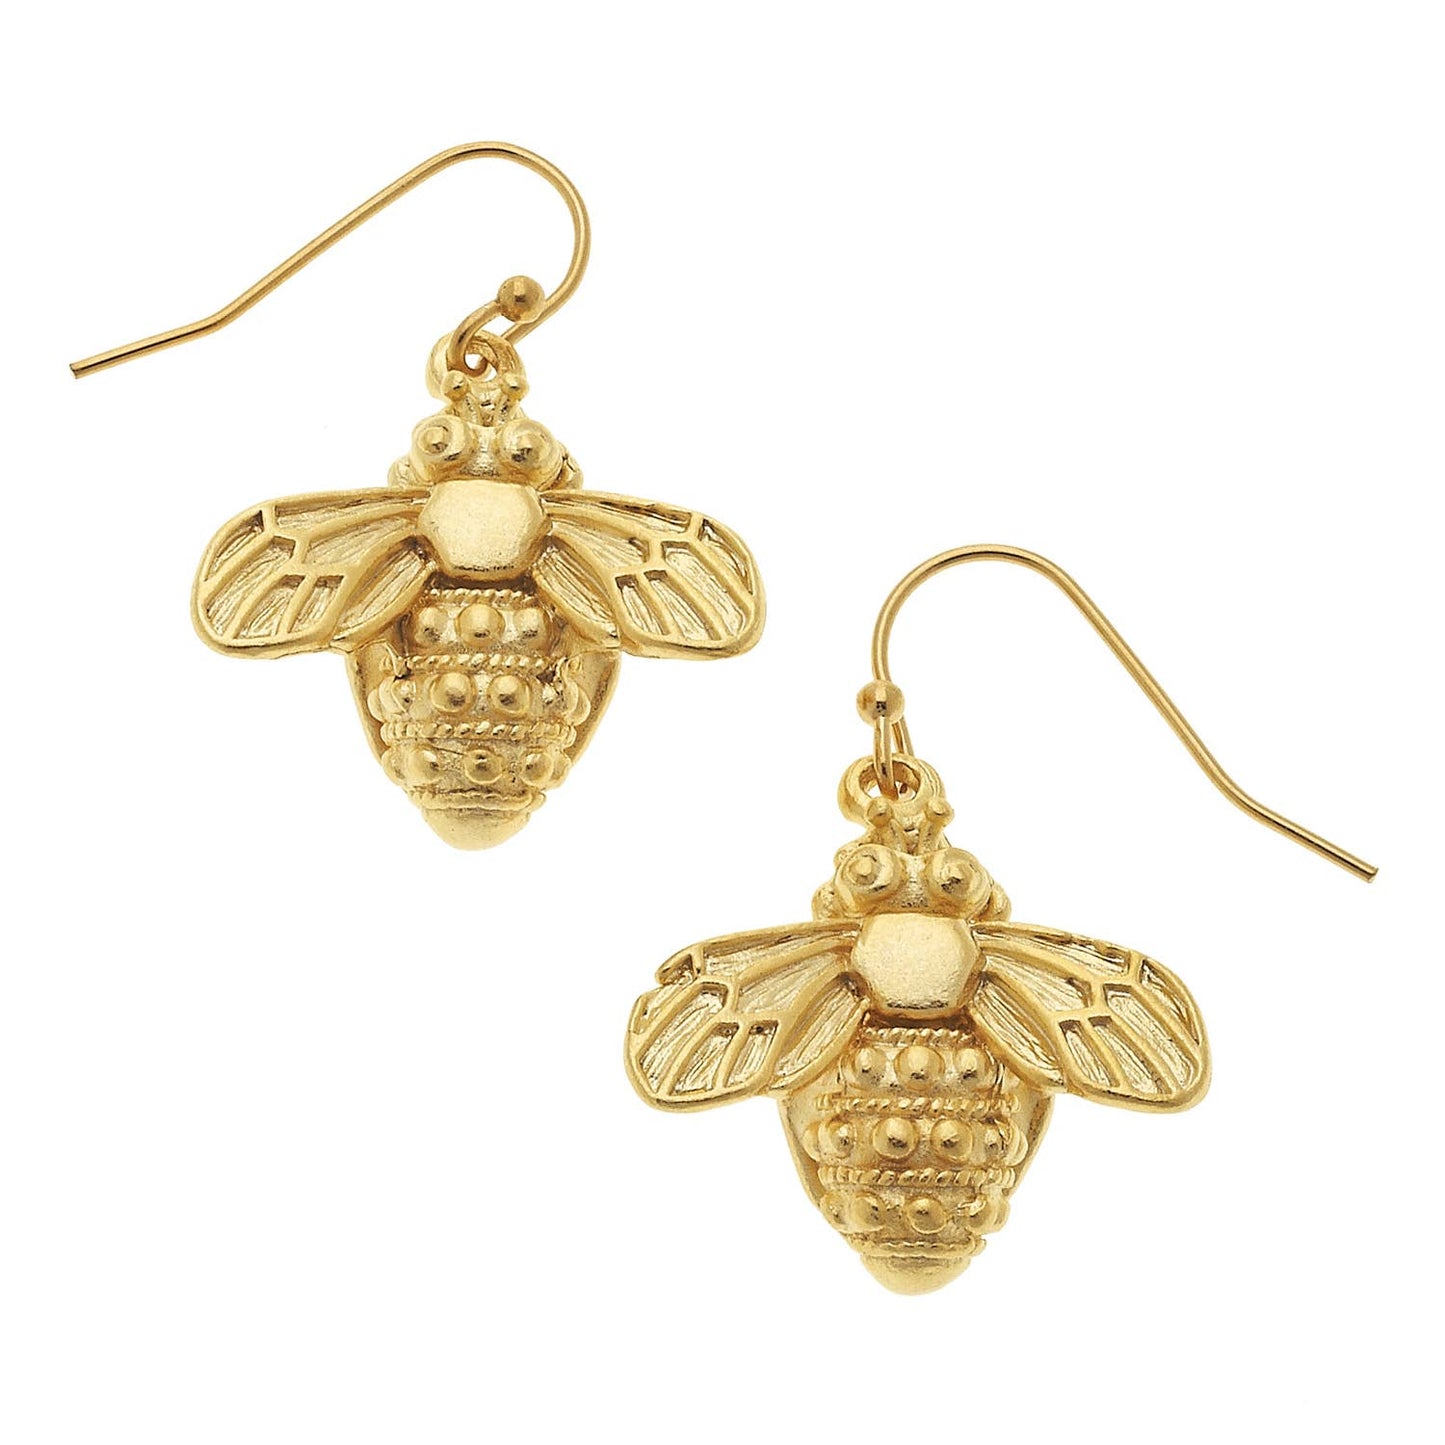 Bee Dangle Earrings